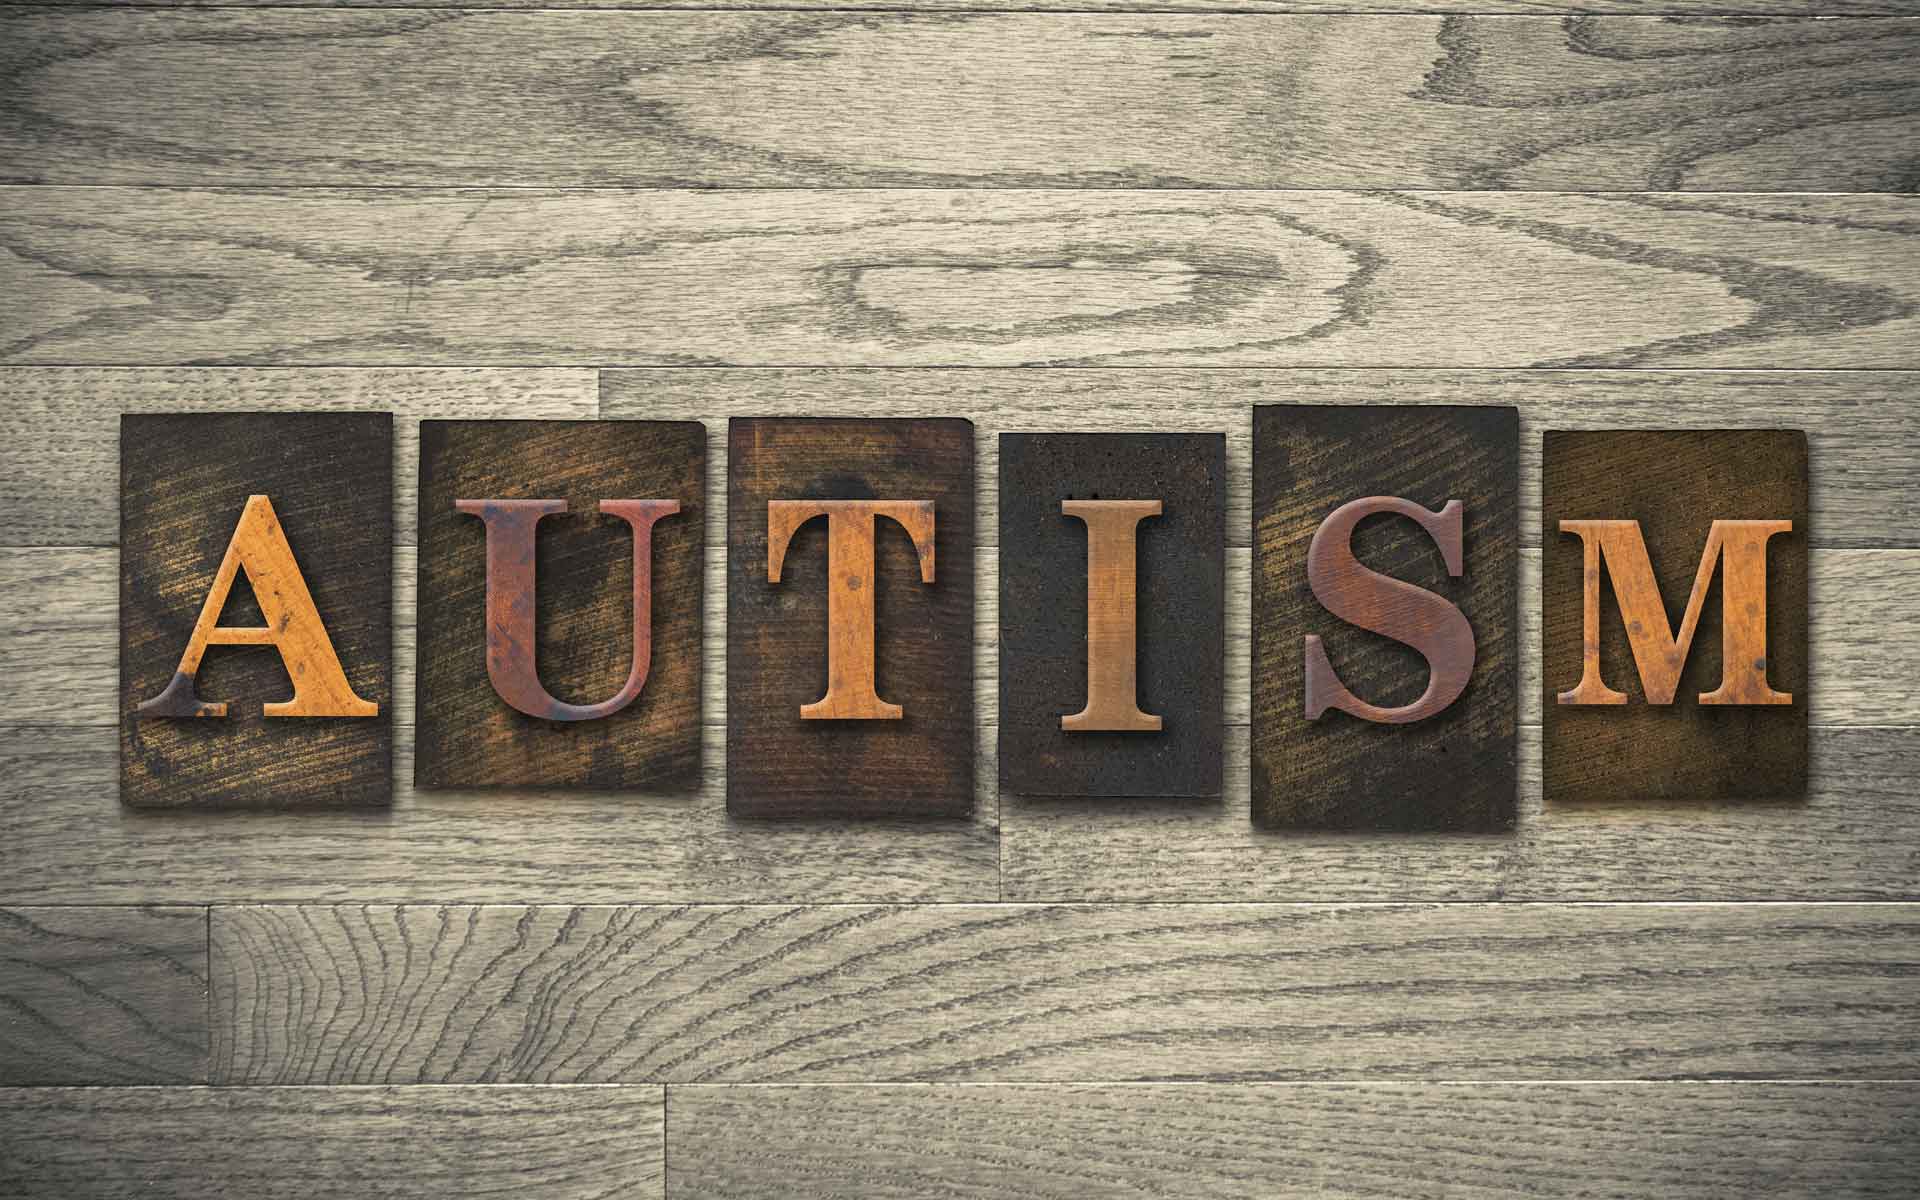 My Autistic Son - Part 2